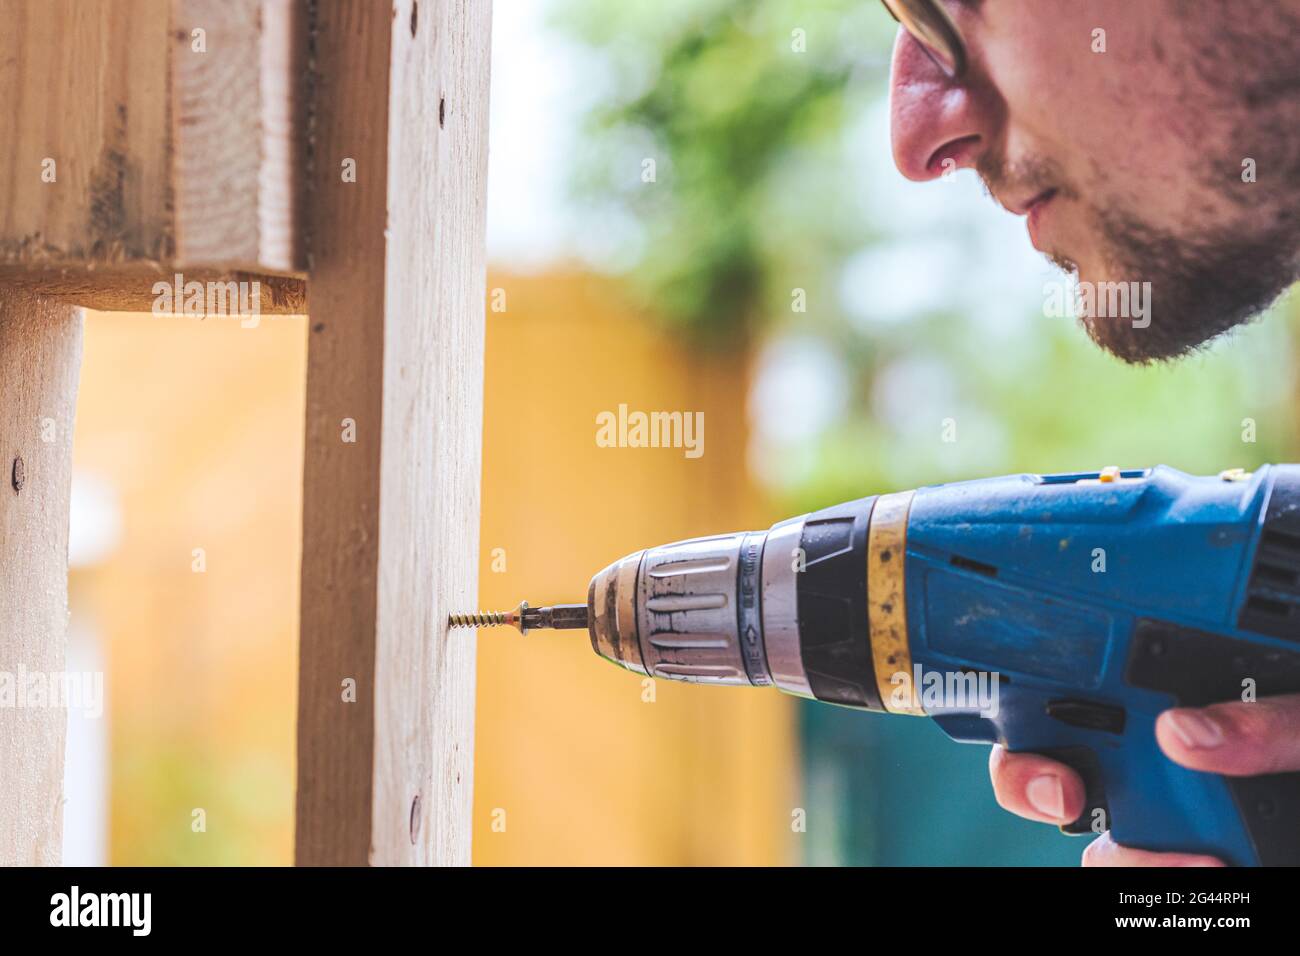 Machen Sie es selbst: Home Handyman verwendet einen Akkuschrauber zum Schrauben Stockfoto